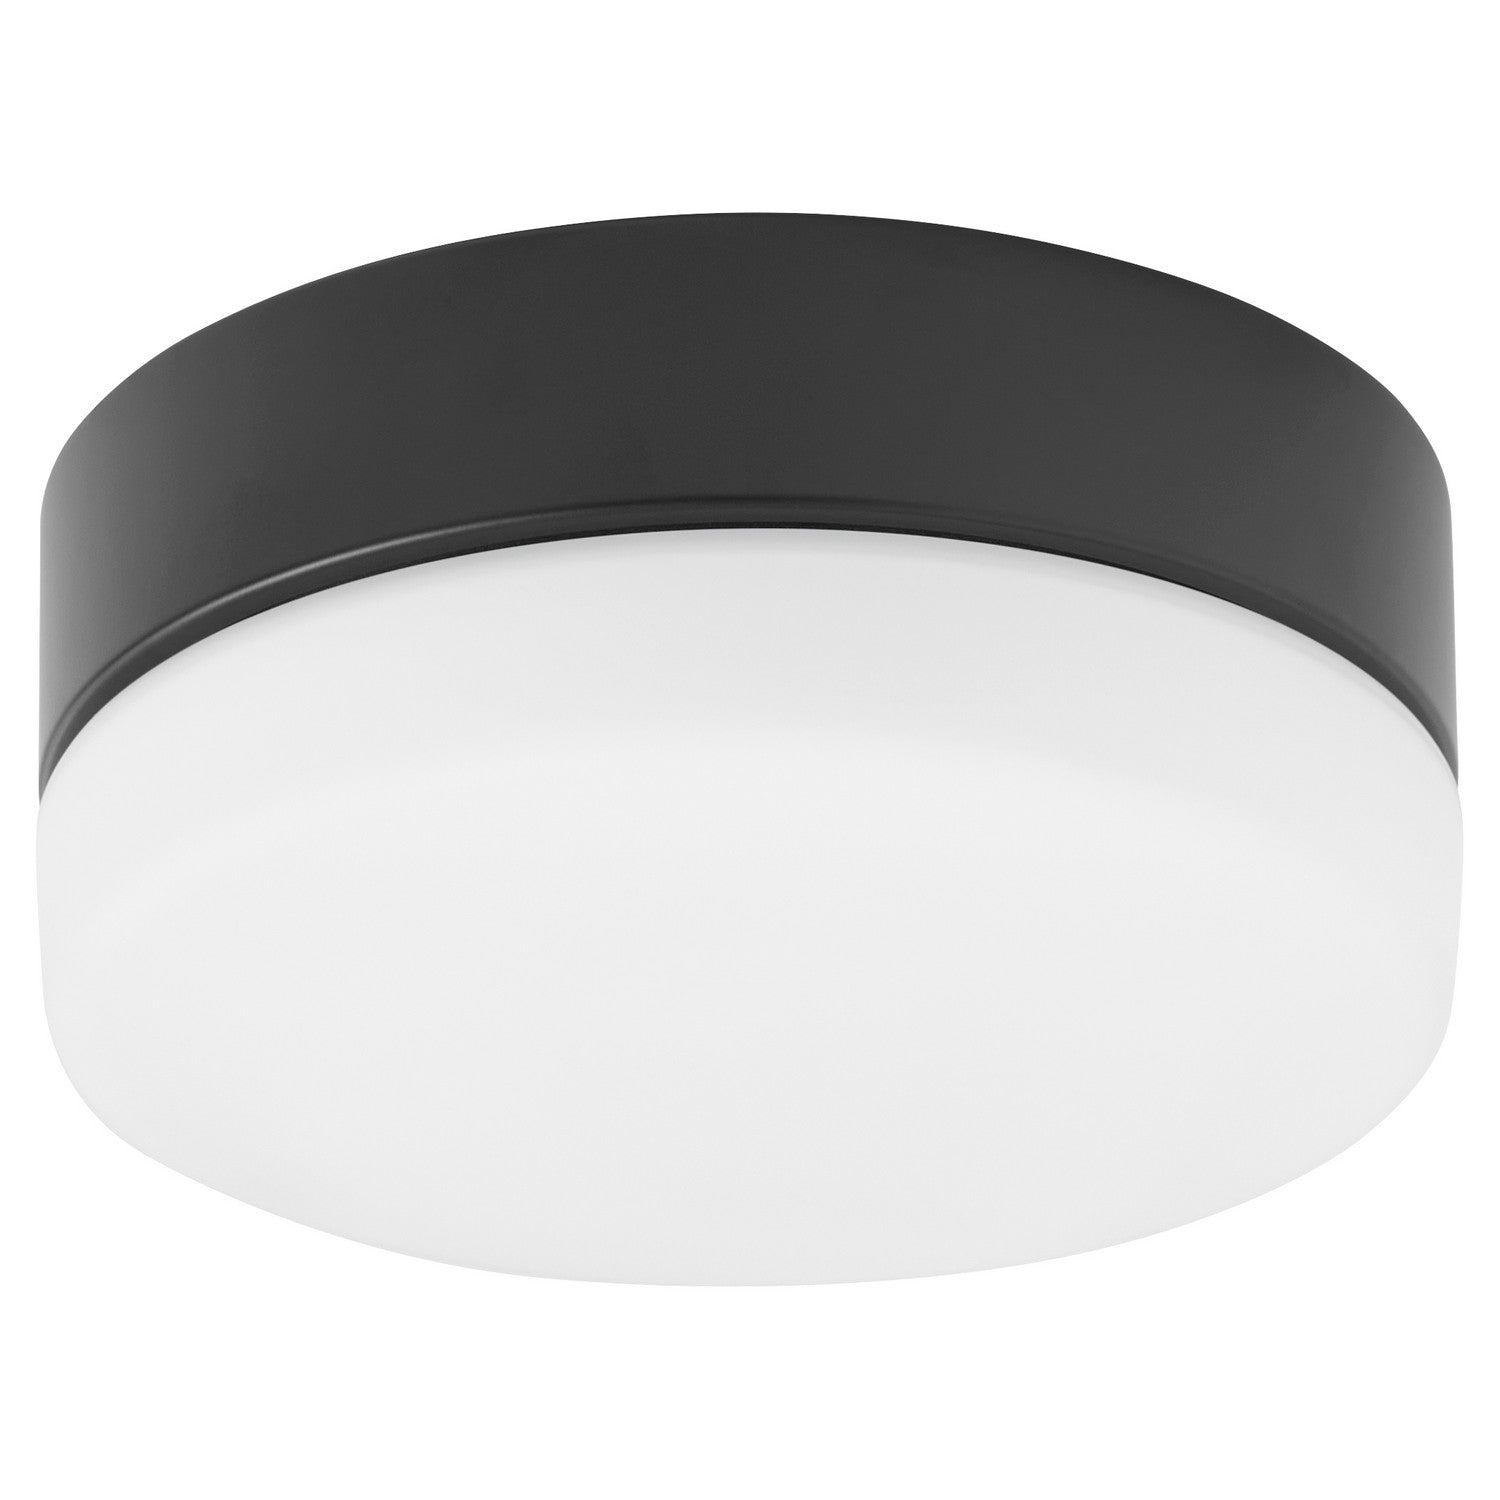 Oxygen ALLEGRO 3-9-119-15 Ceiling Fan LED Light Kit - Black